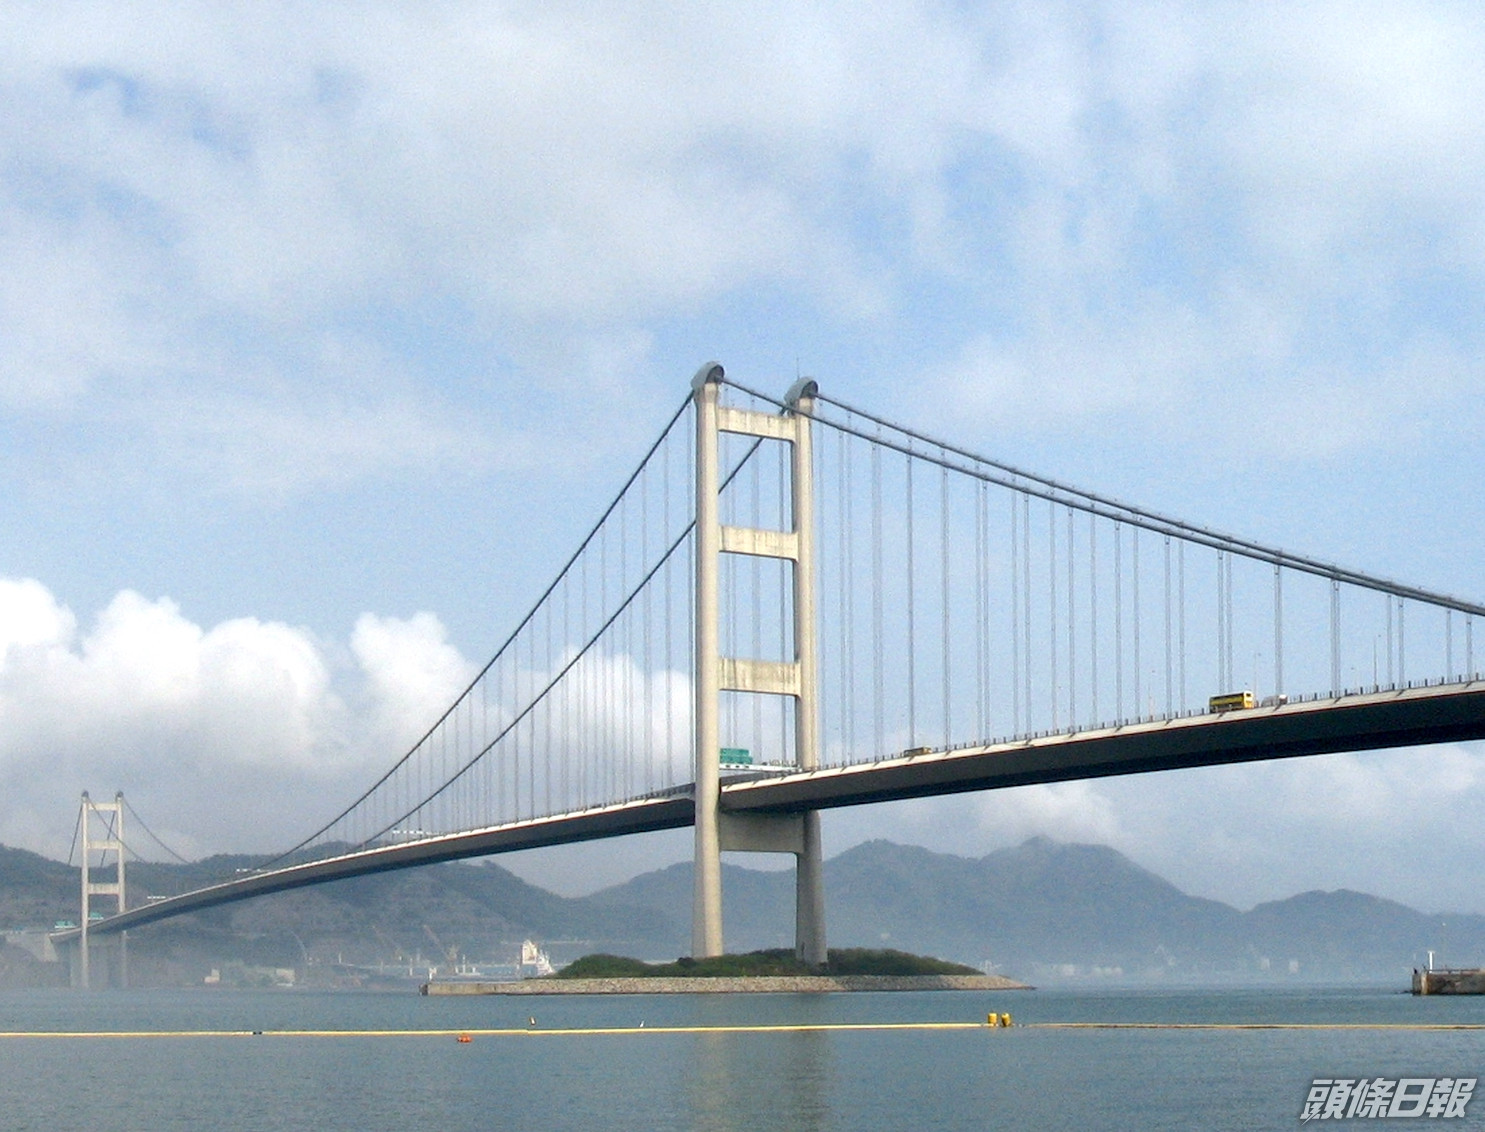 政府倡放寬青馬大橋通航高度限制至57米便利船務業運作 頭條日報